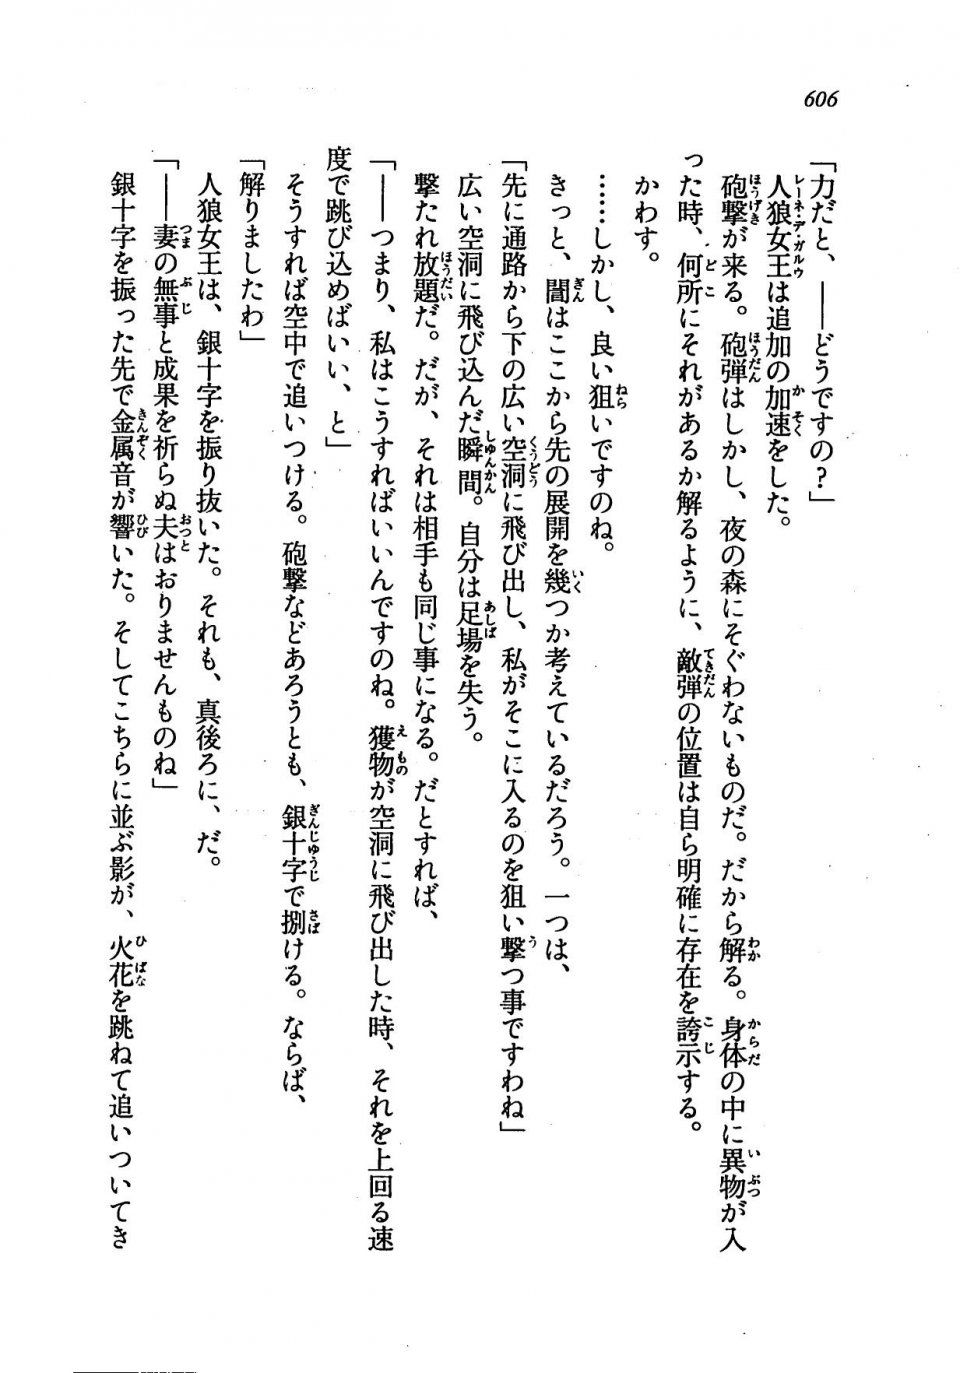 Kyoukai Senjou no Horizon LN Vol 19(8A) - Photo #606